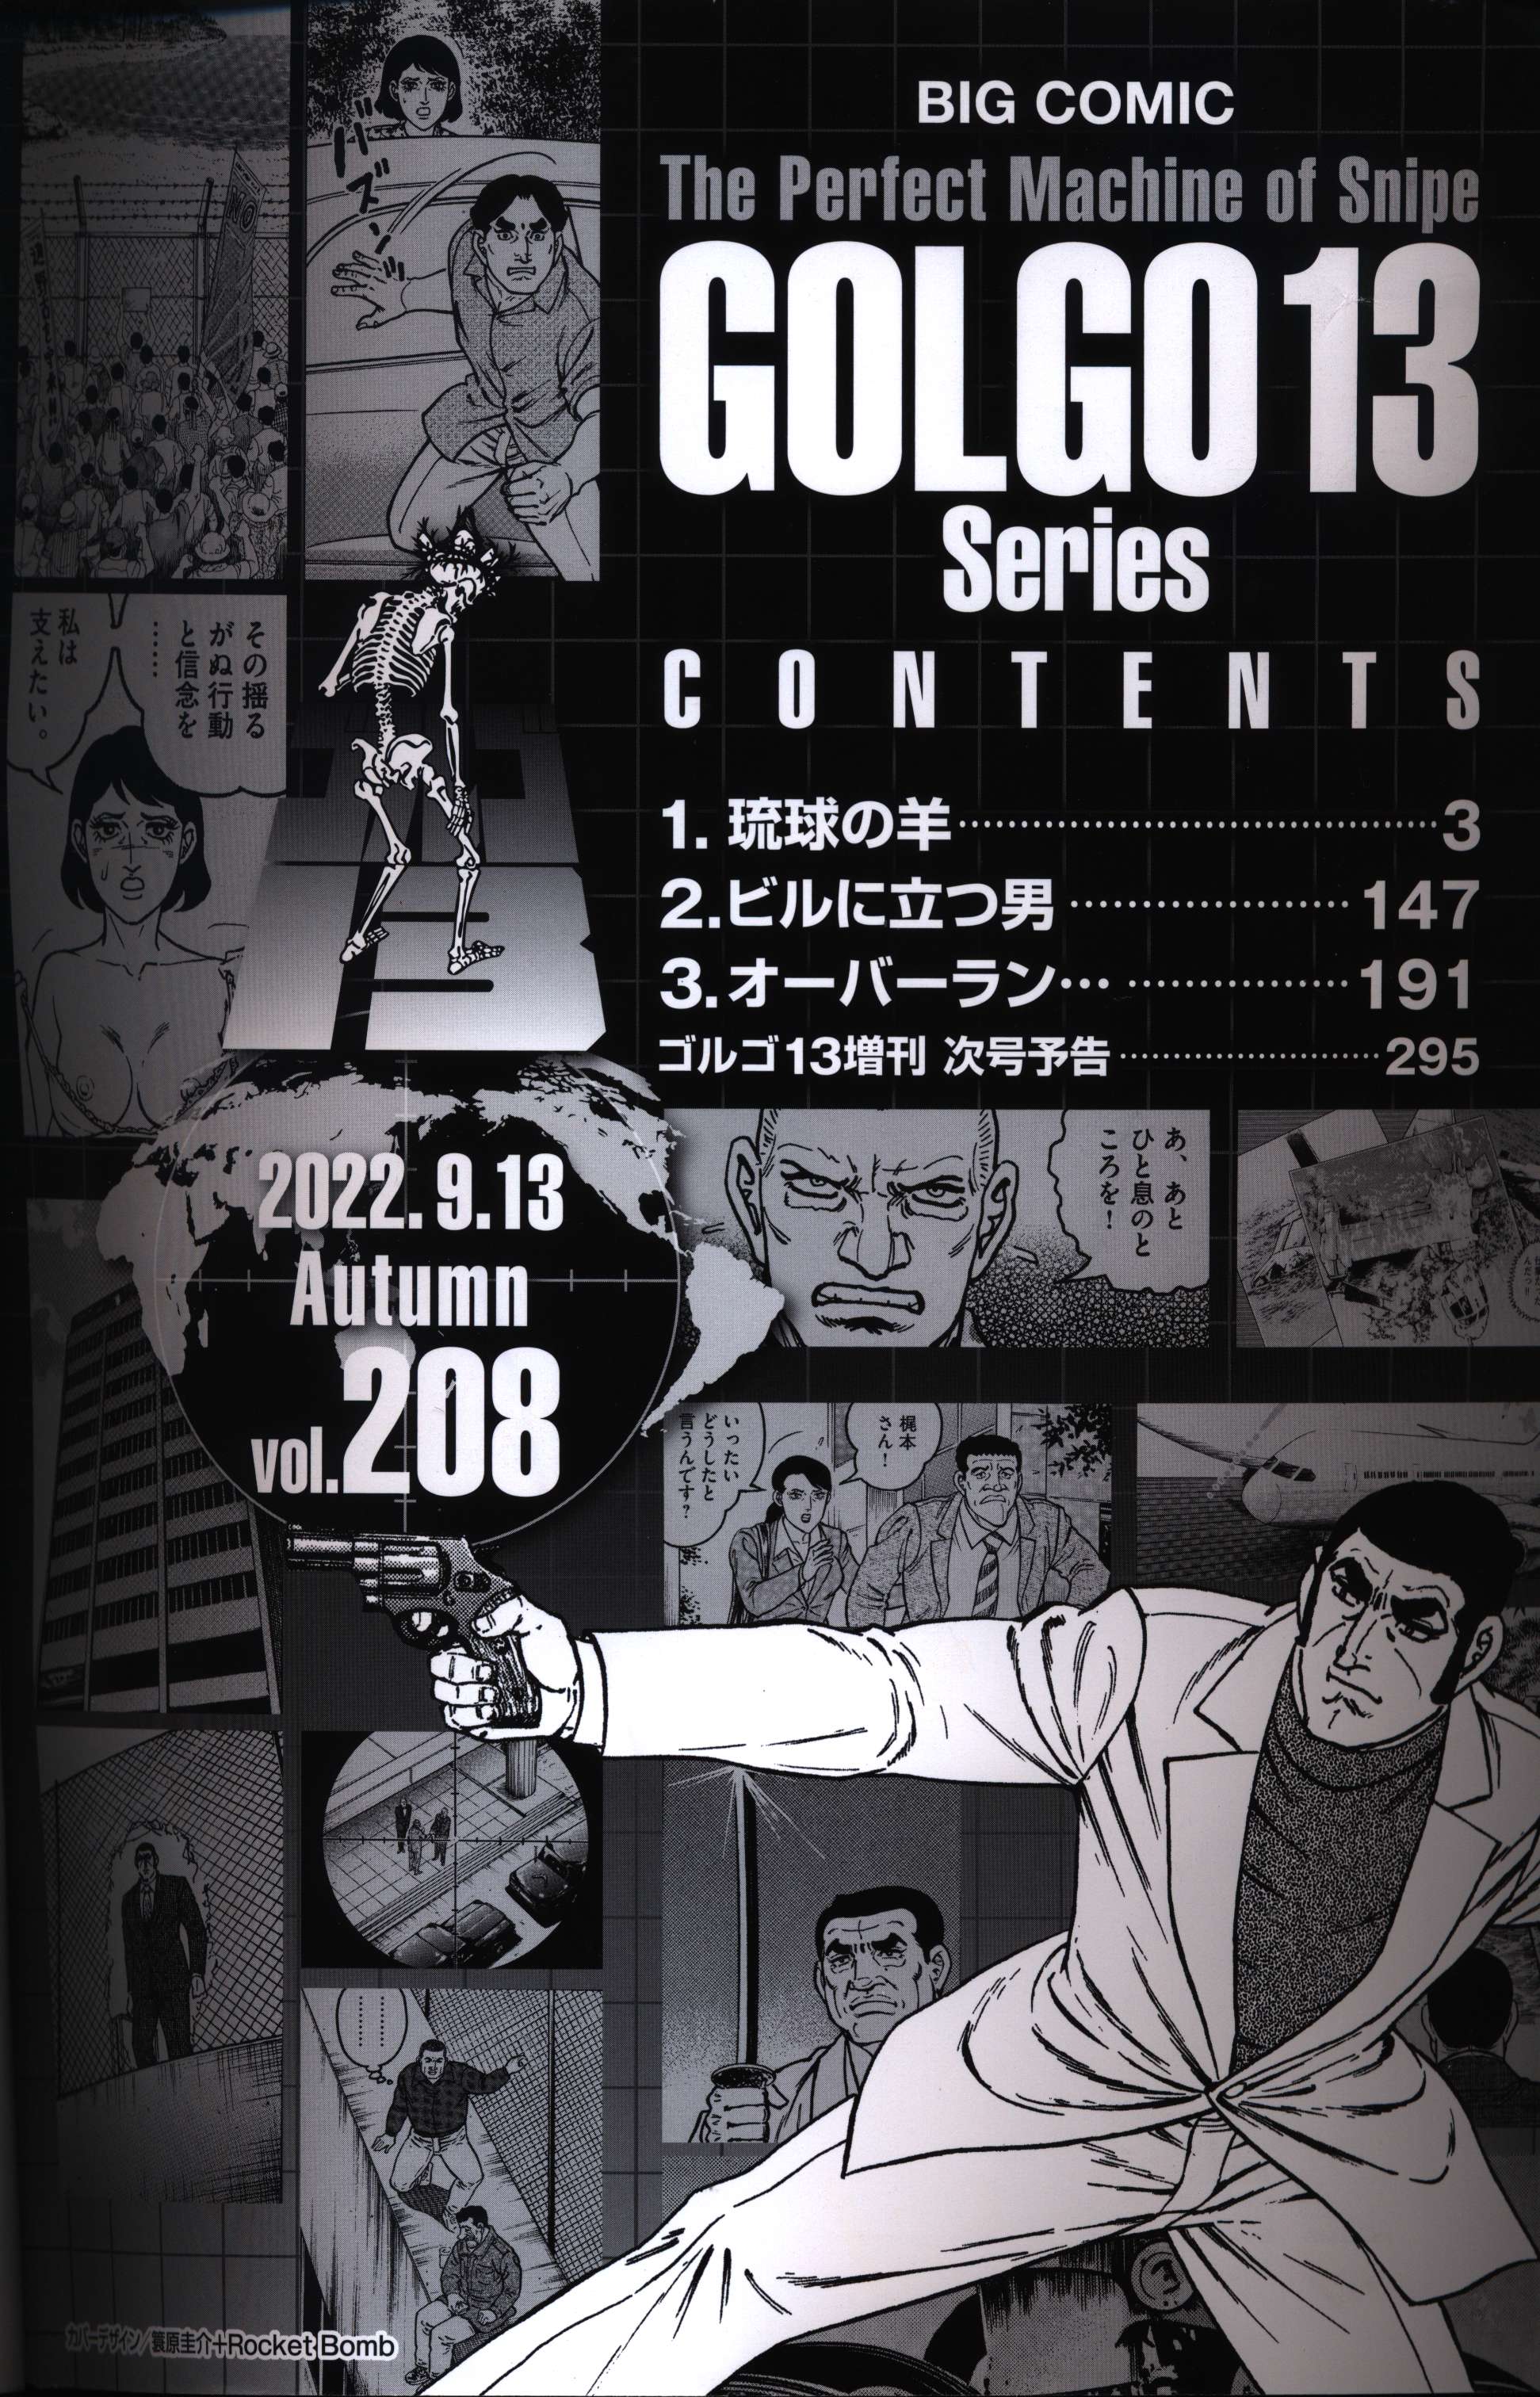 ゴルゴ13 ビッグコミック増刊 大判 21冊セット第126集2002年3月13日